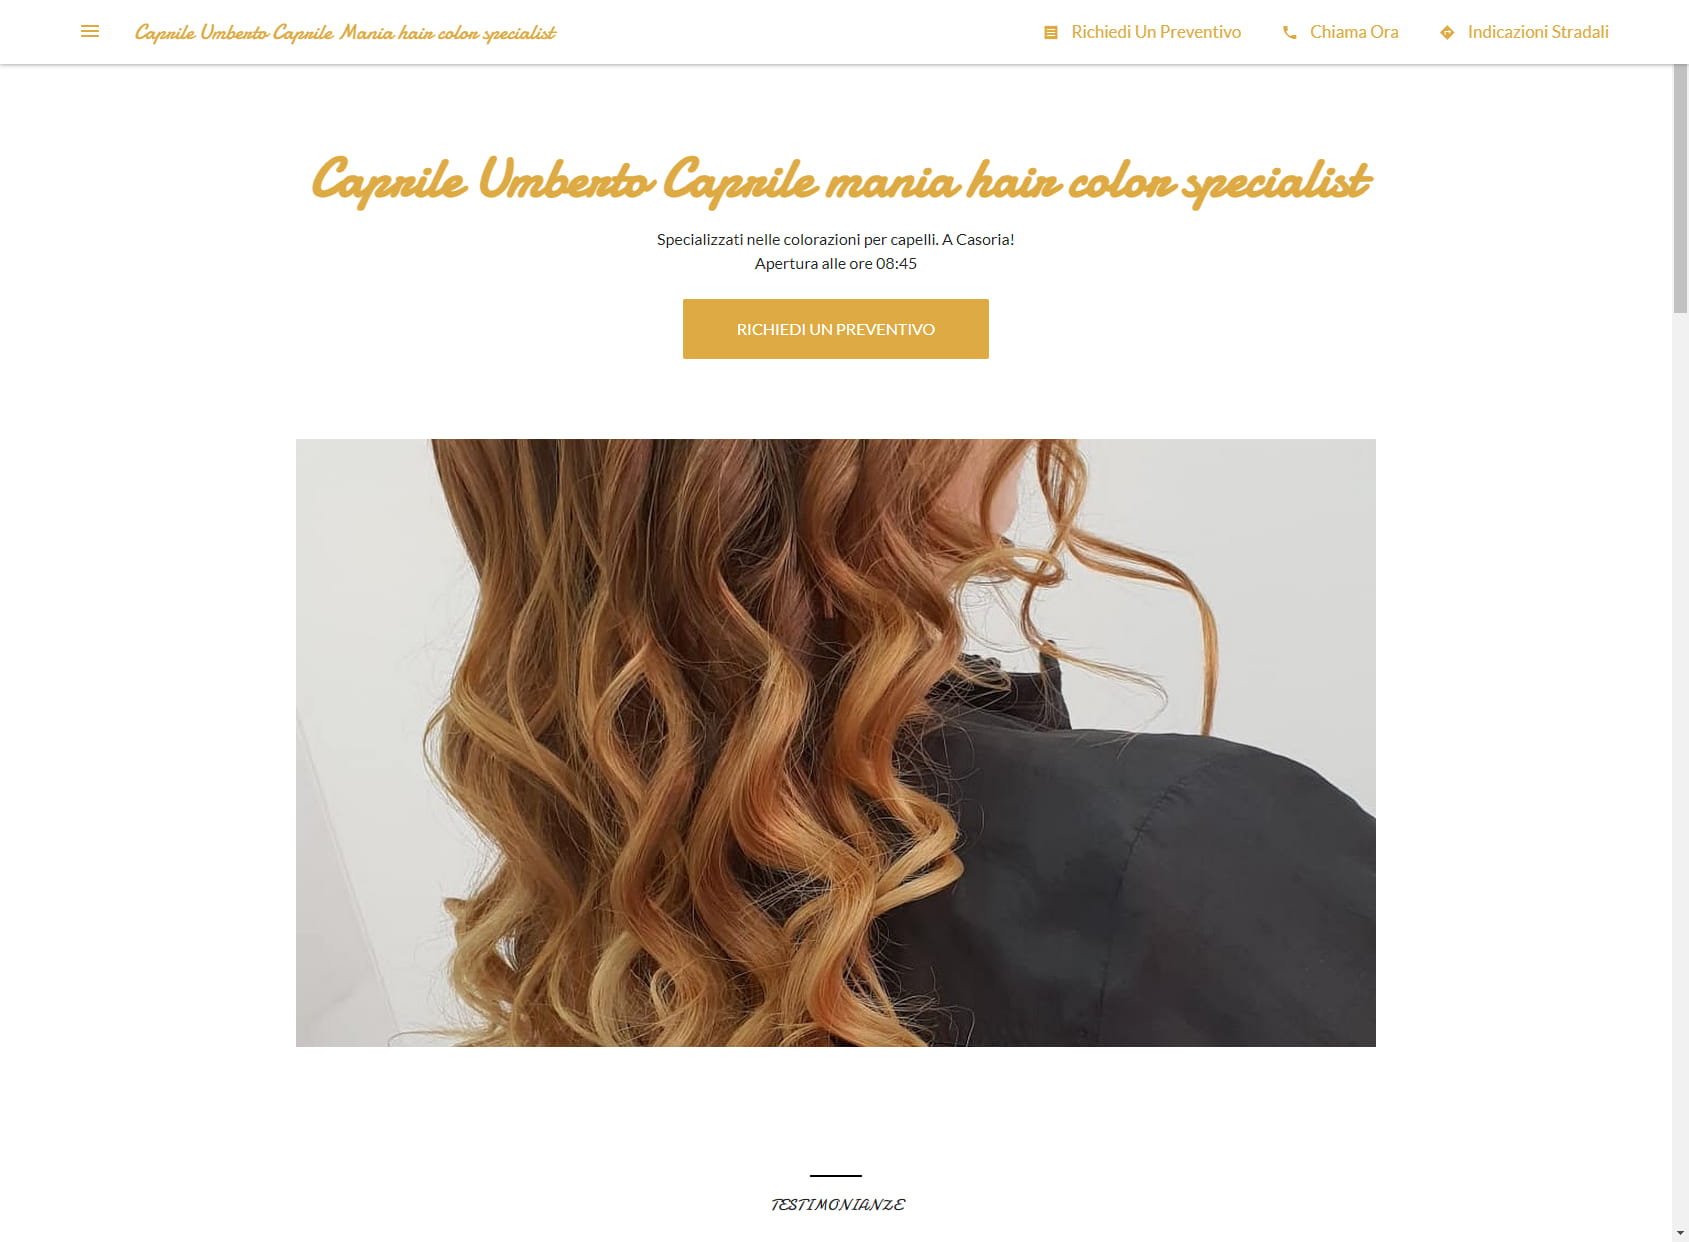 Caprile Umberto Caprile Mania hair color specialist